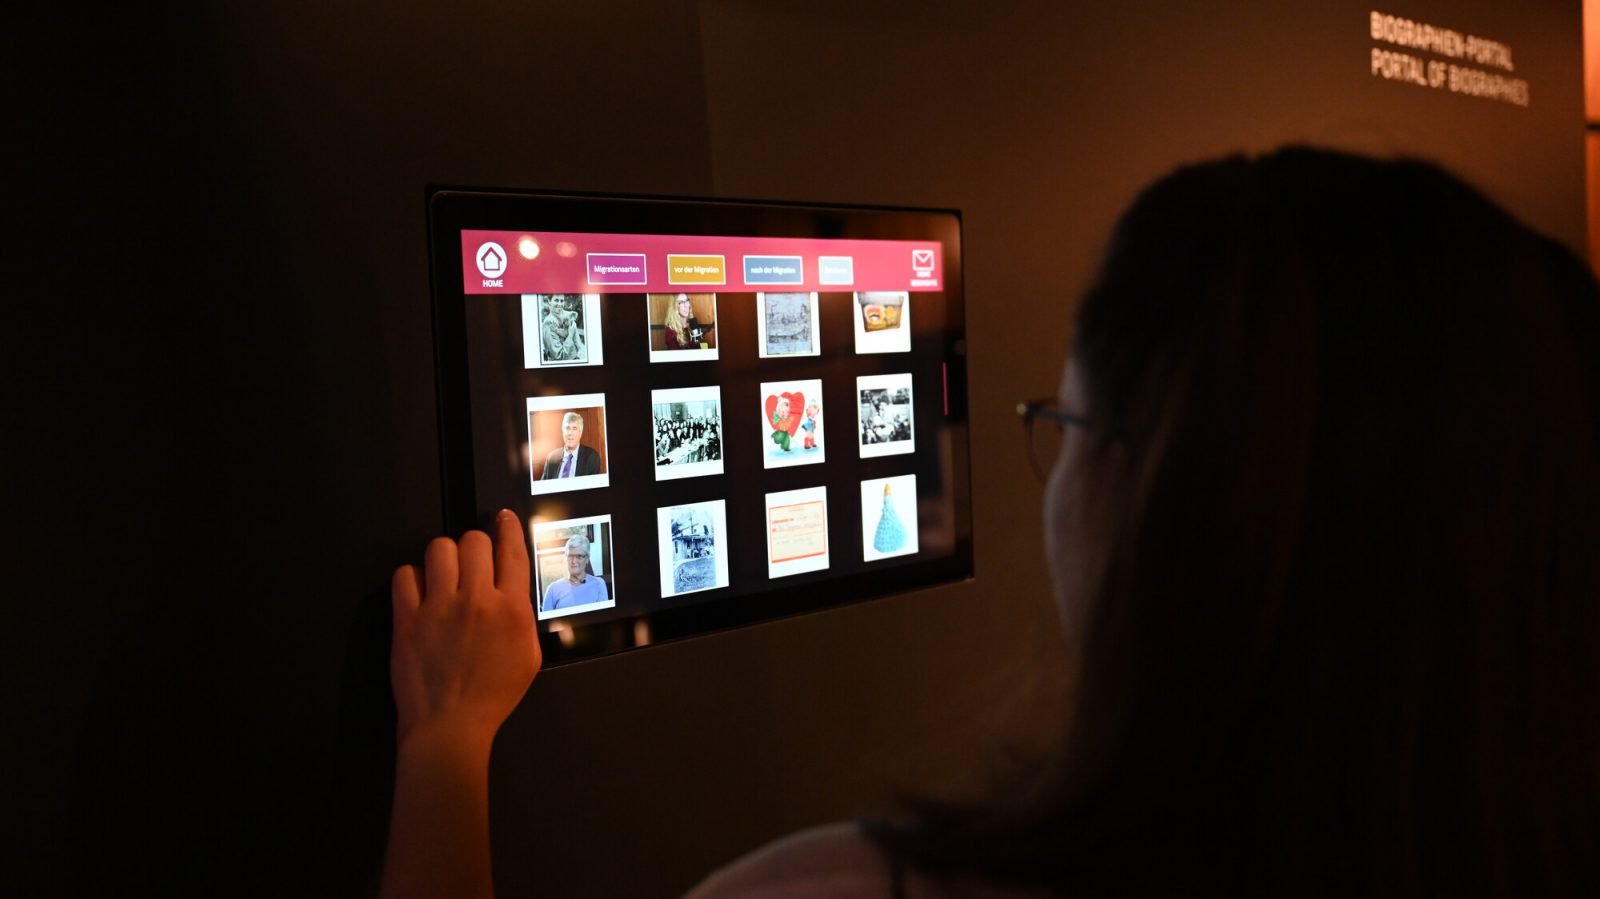 Medienstation mit Bildern von Personen und Objekten. Eine Frau steht davor und wählt auf dem Touchscreen eines der Bilder an.